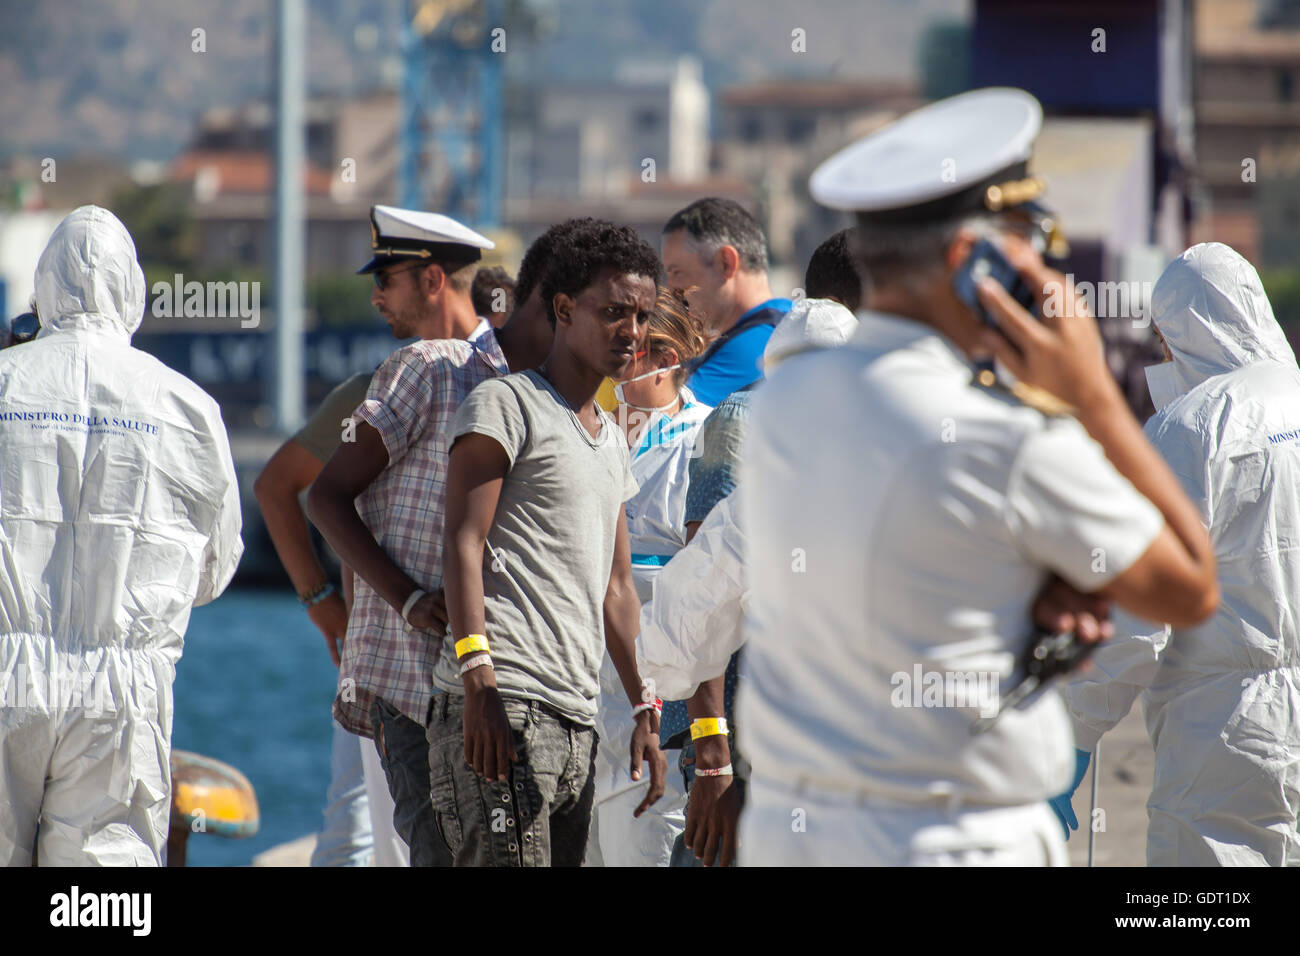 Palermo, Italia. Il 20 luglio, 2016. Il Comandante Borsini, un italiano di nave da guerra, arrivati a Palermo il 20 luglio 2016 con un comunicato 890 rifugiati a bordo. Credito: Antonio Melita/Alamy Live News Foto Stock